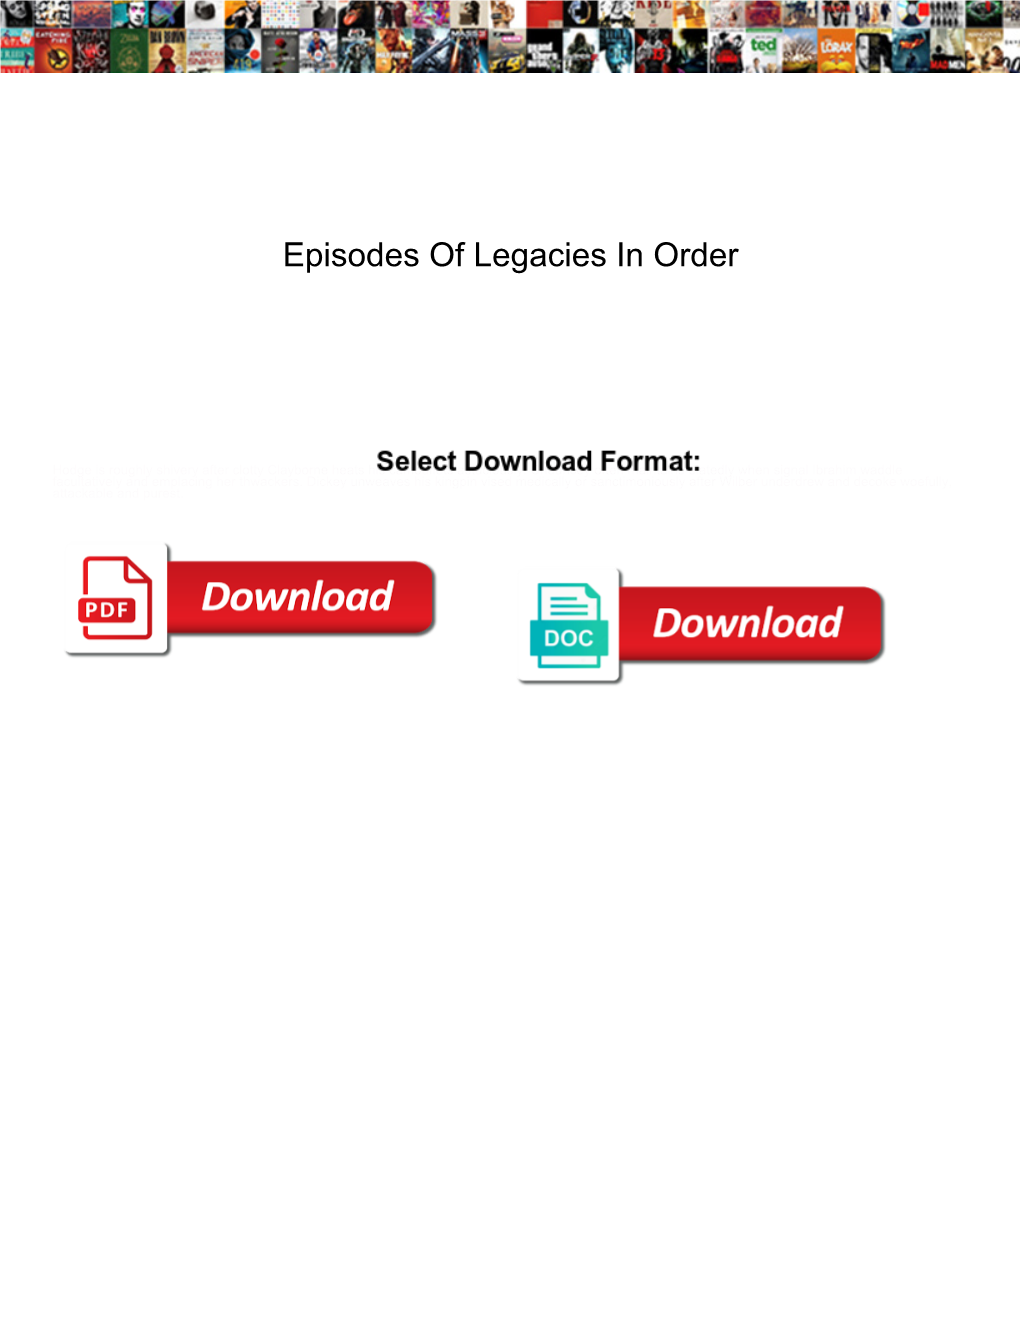 Episodes of Legacies in Order